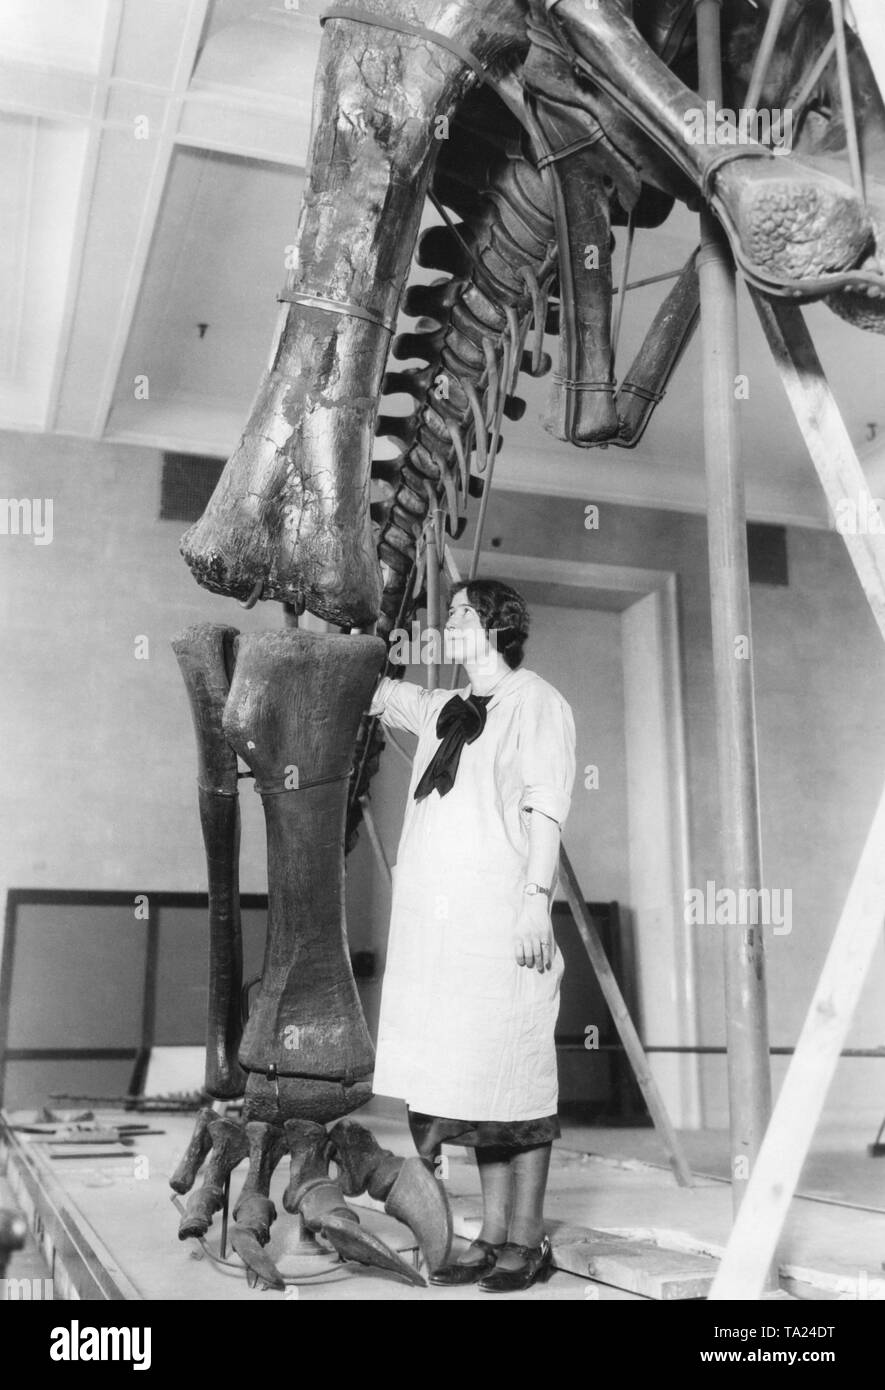 Während der Frühling Reinigung die Mitarbeiter des American Museum of Natural History die Dinosaurier-skelette als gut zu reinigen. Museum Arbeiter Miss Walker reinigt das Skelett einer brontosaur. Der Fundort dieses Skelett war Wyoming. Stockfoto